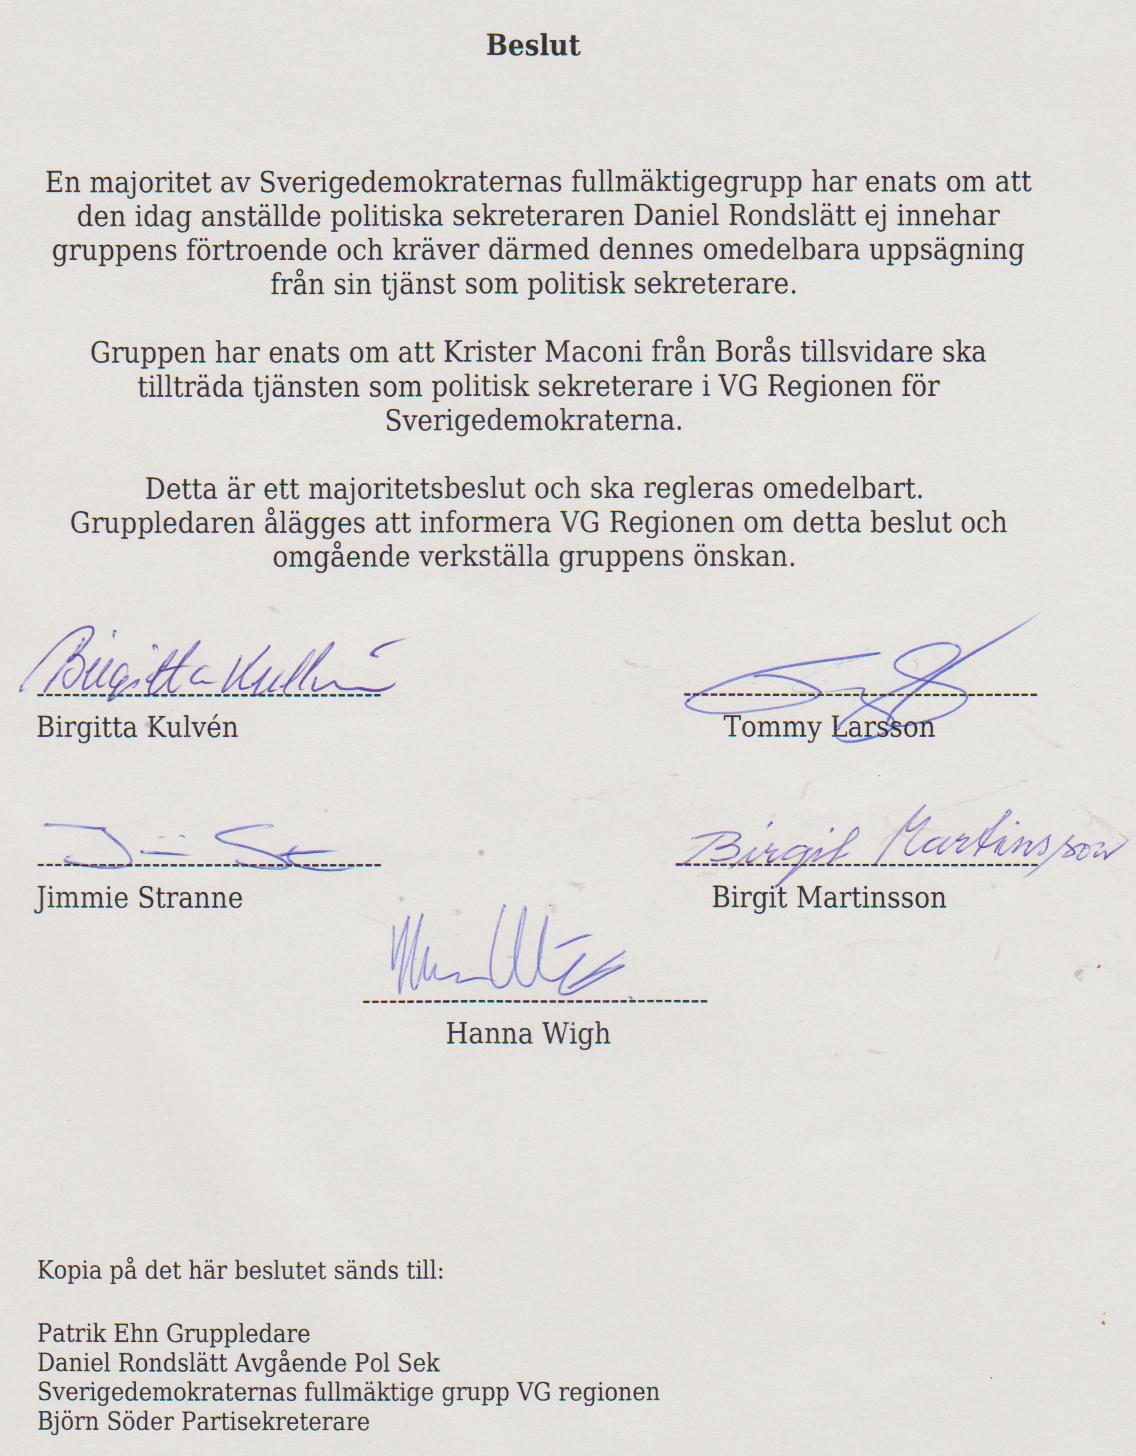 Här är "beslutet" som fem av nio ledamöter har skrev under för att avsätta Rondslätt.